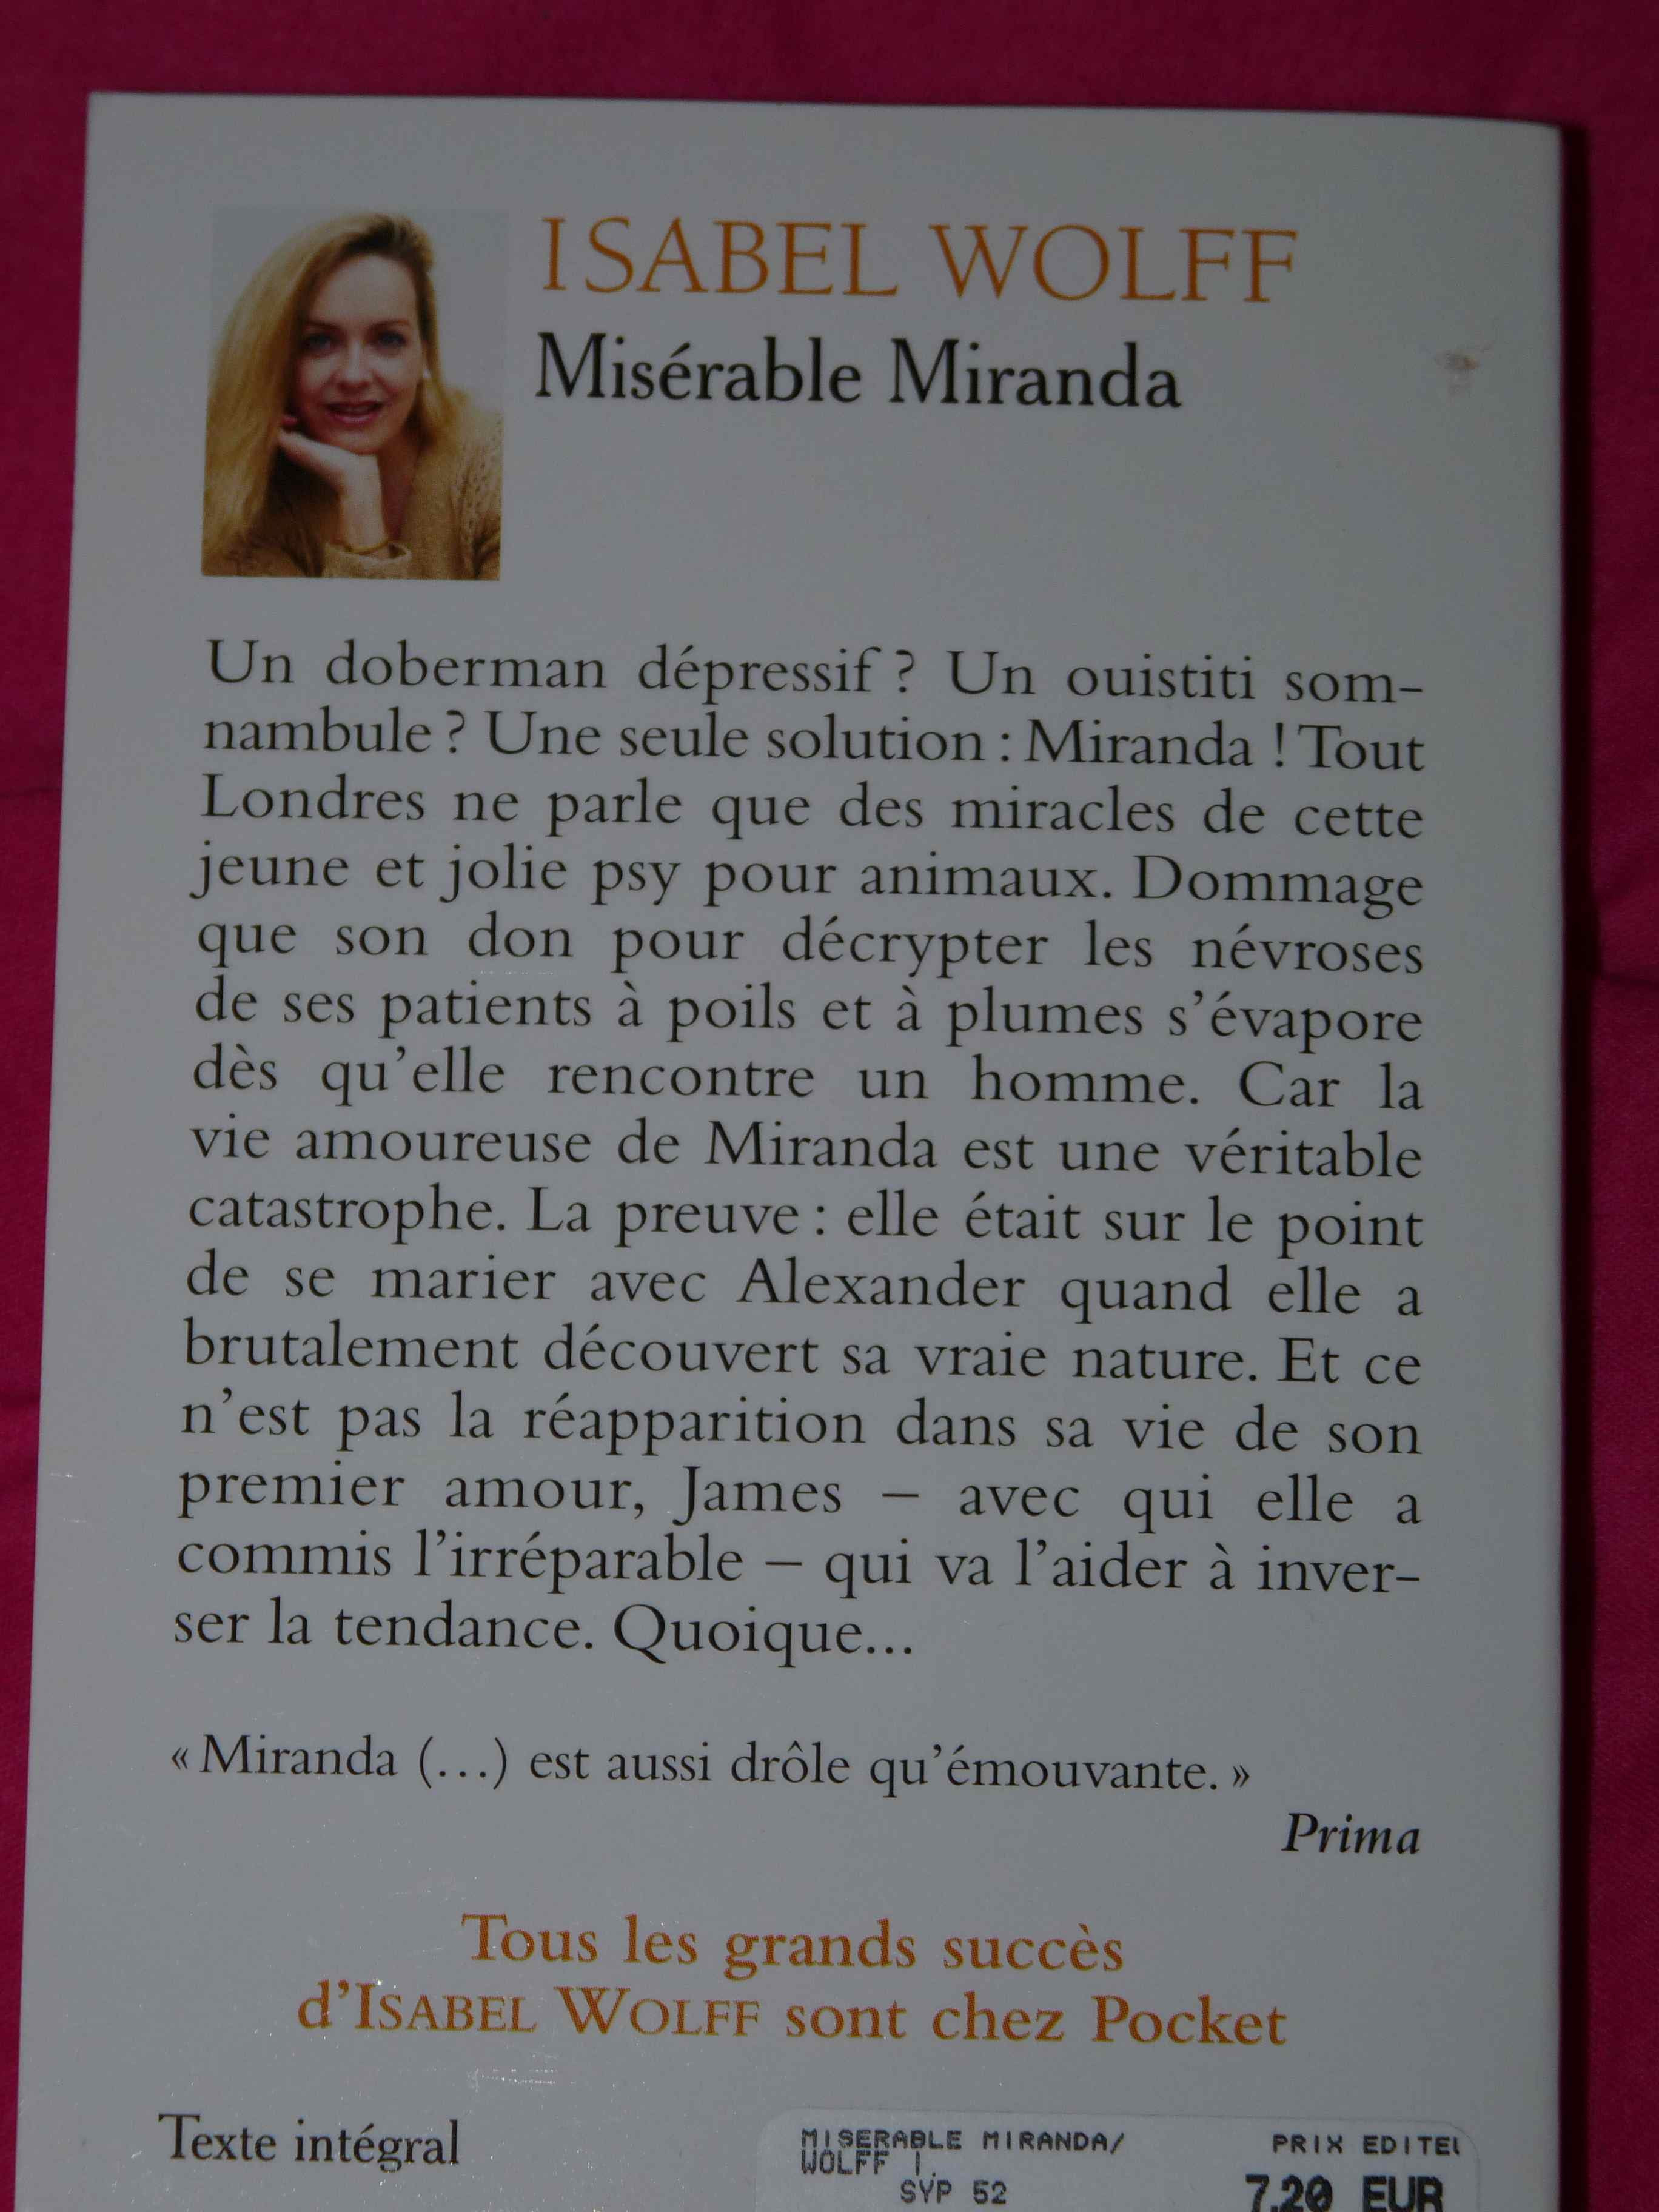 Résumé Les Misérables 4ème Par Chapitre Les Miserables Resume De L Histoire - Aperçu Historique